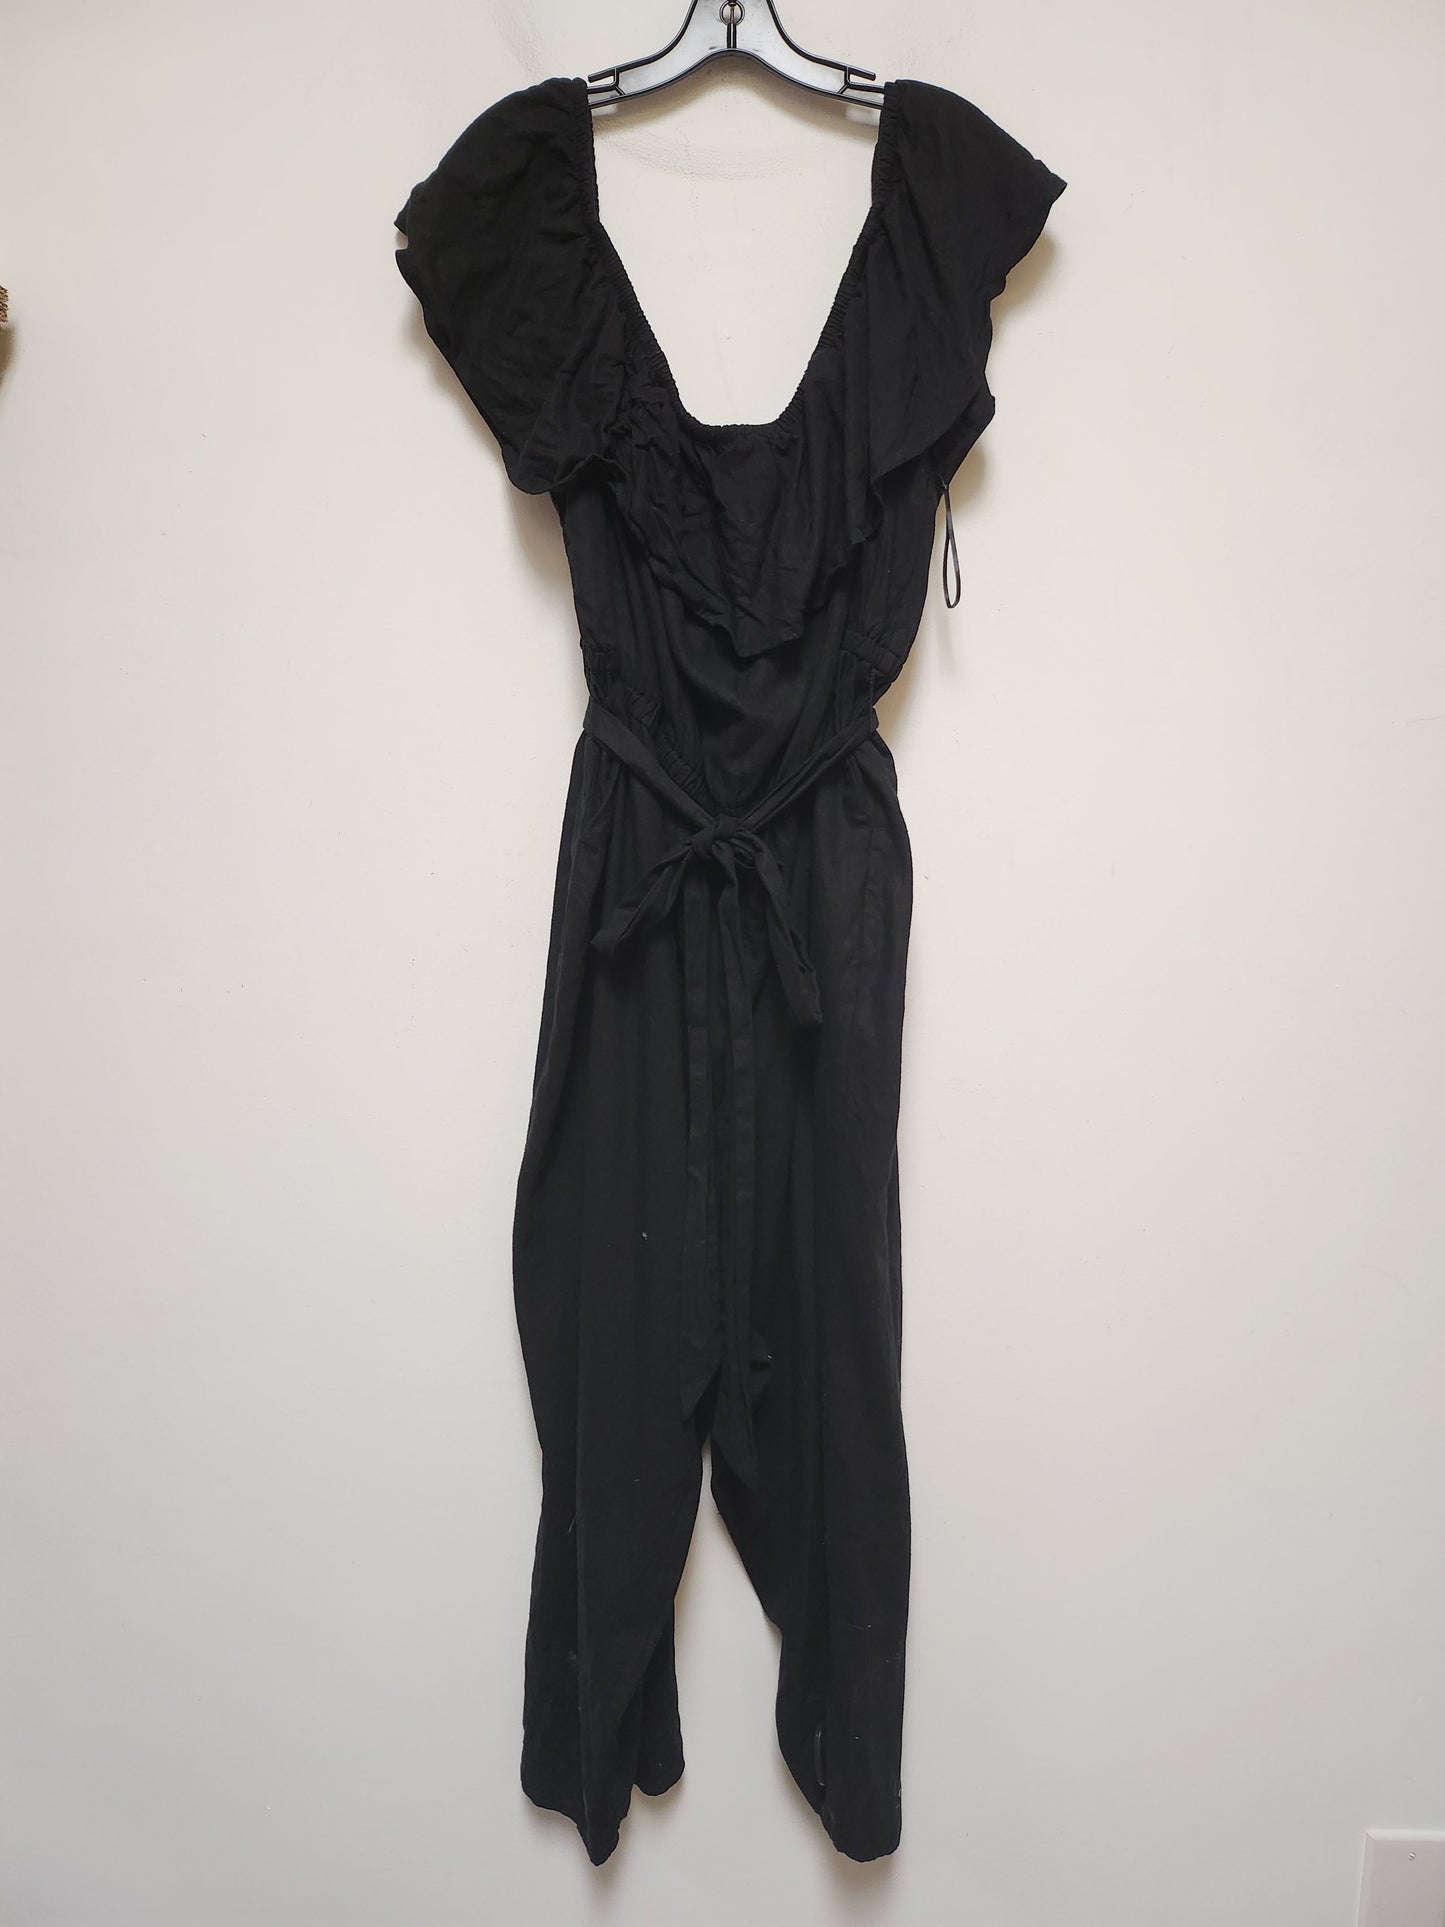 Black Jumpsuit Ava & Viv, Size 3x